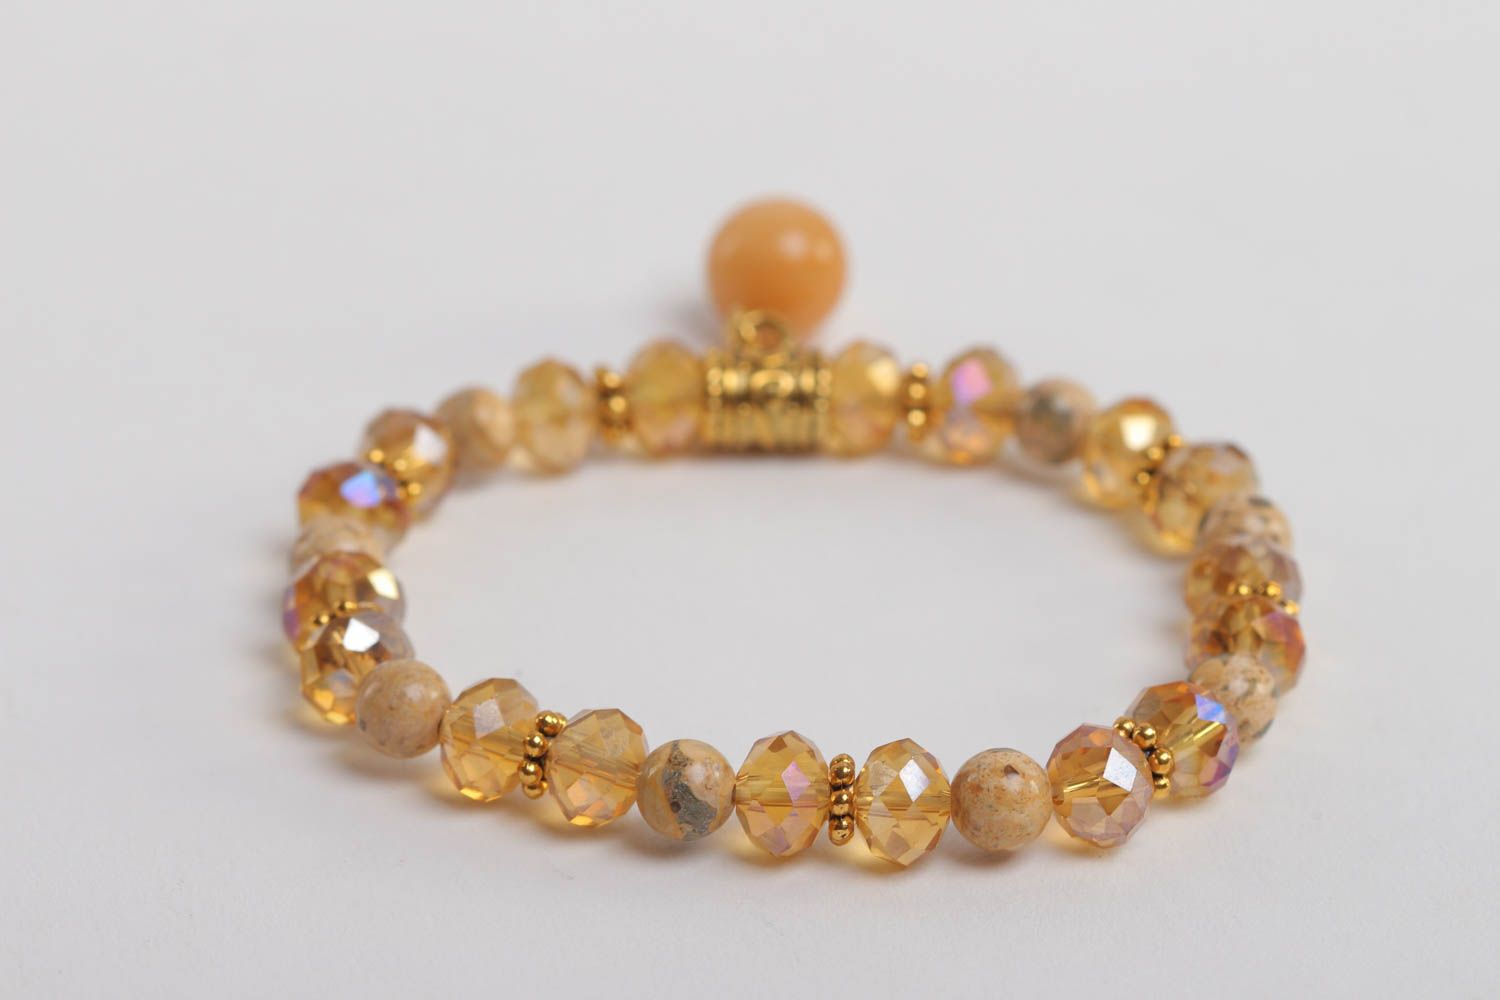 Stone beige beads' charm tennis bracelet for teen girl photo 4